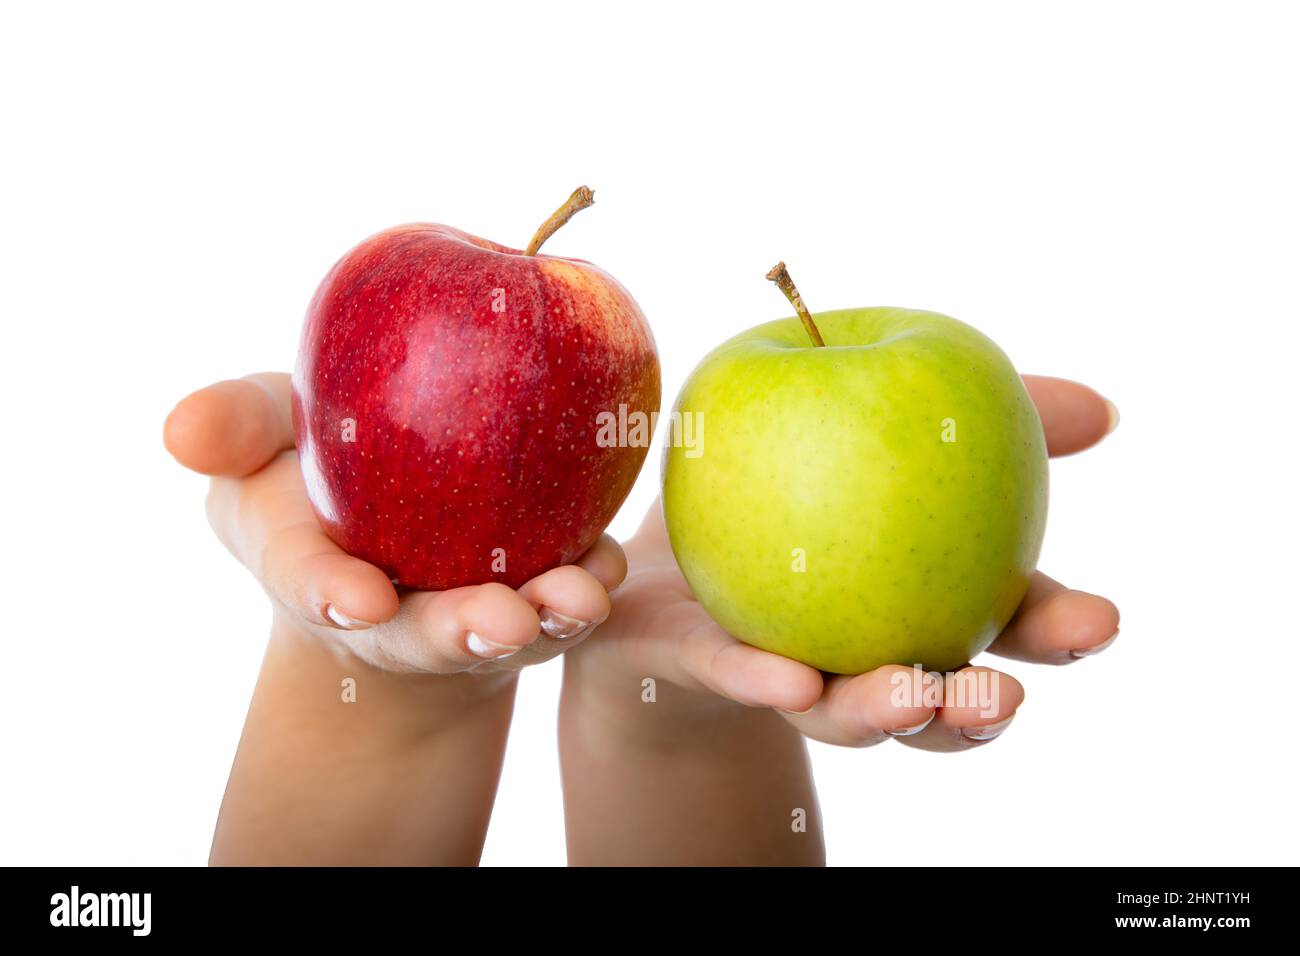 Roter und grüner Apfel in weiblichen Händen gehalten. Konzeptionell für Vergleich, Differenzierung und Auswahlverfahren. Stockfoto